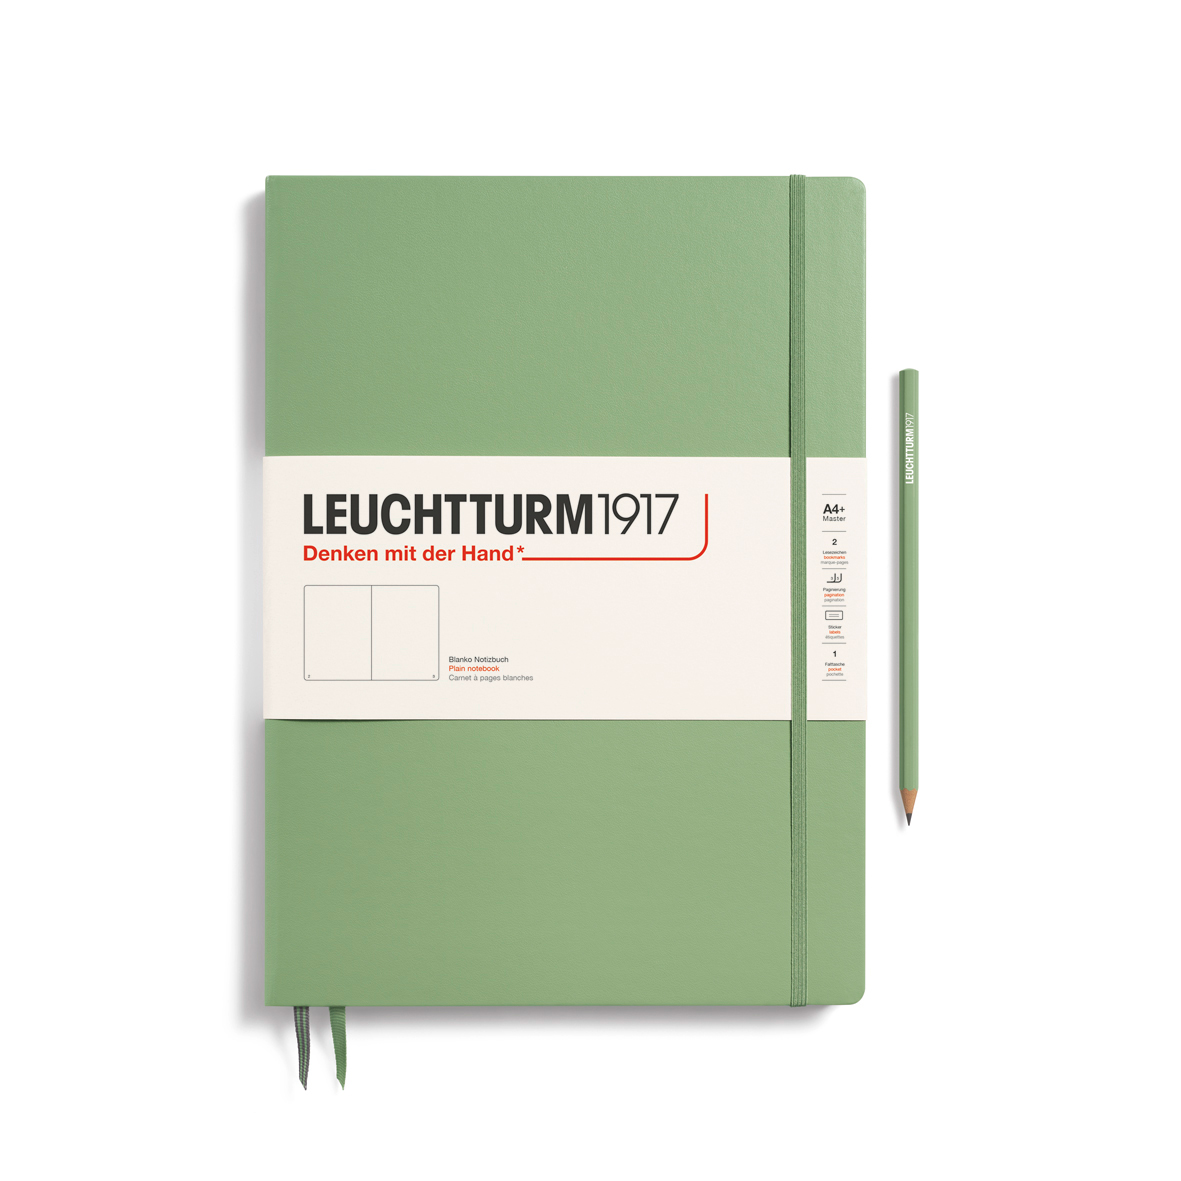 Записная книжка нелинованная Leuchtturm Master Slim А4+ 123 стр., твердая обложка пастельный зеленый